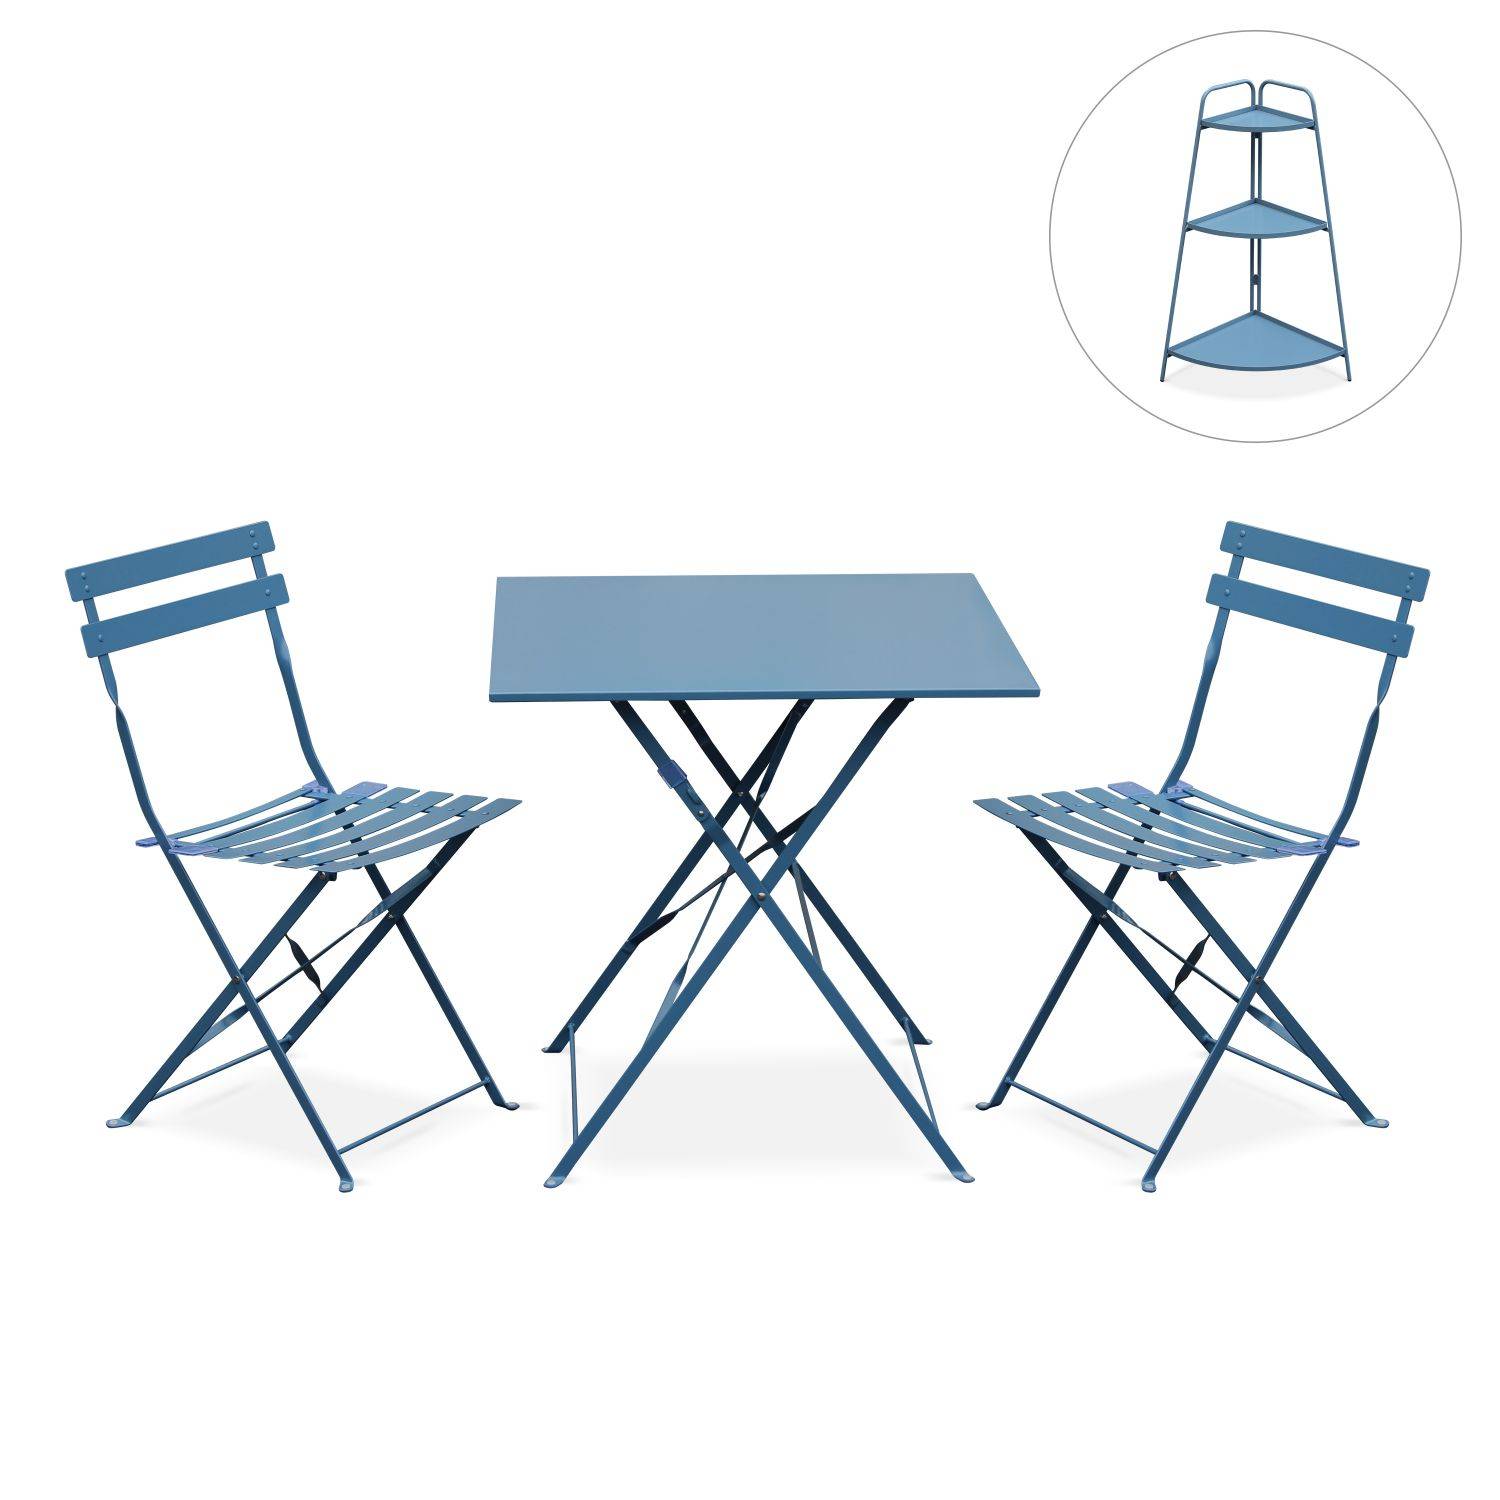 Klappbares Bistro-Gartenmöbel Set - Emilia quadratisch blau-grau - Tisch 70 x 70 cm mit zwei Klappstühlen + Eckregal Alicia Photo1